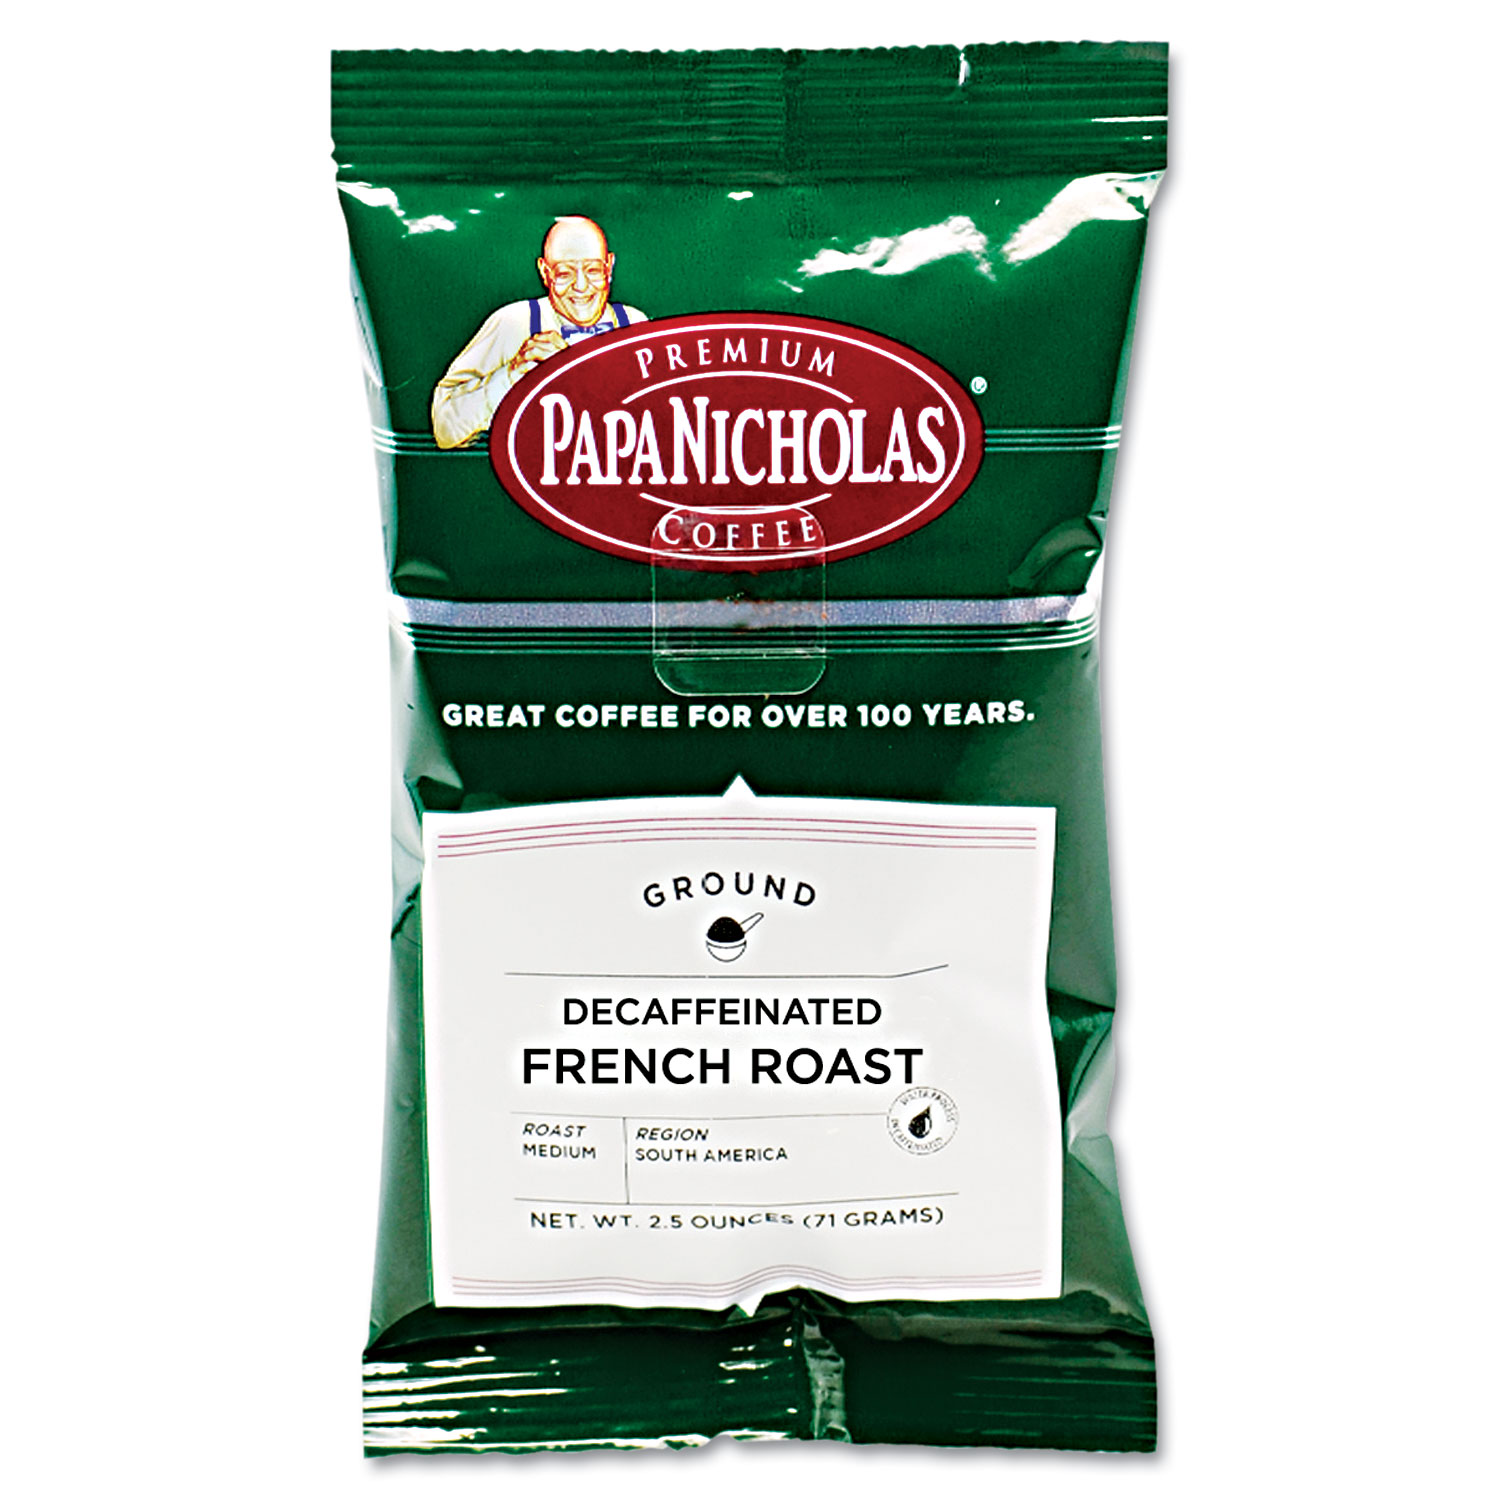  PapaNicholas Coffee 25186 Premium Coffee, Decaffeinated French Roast, 18/Carton (PCO25186) 